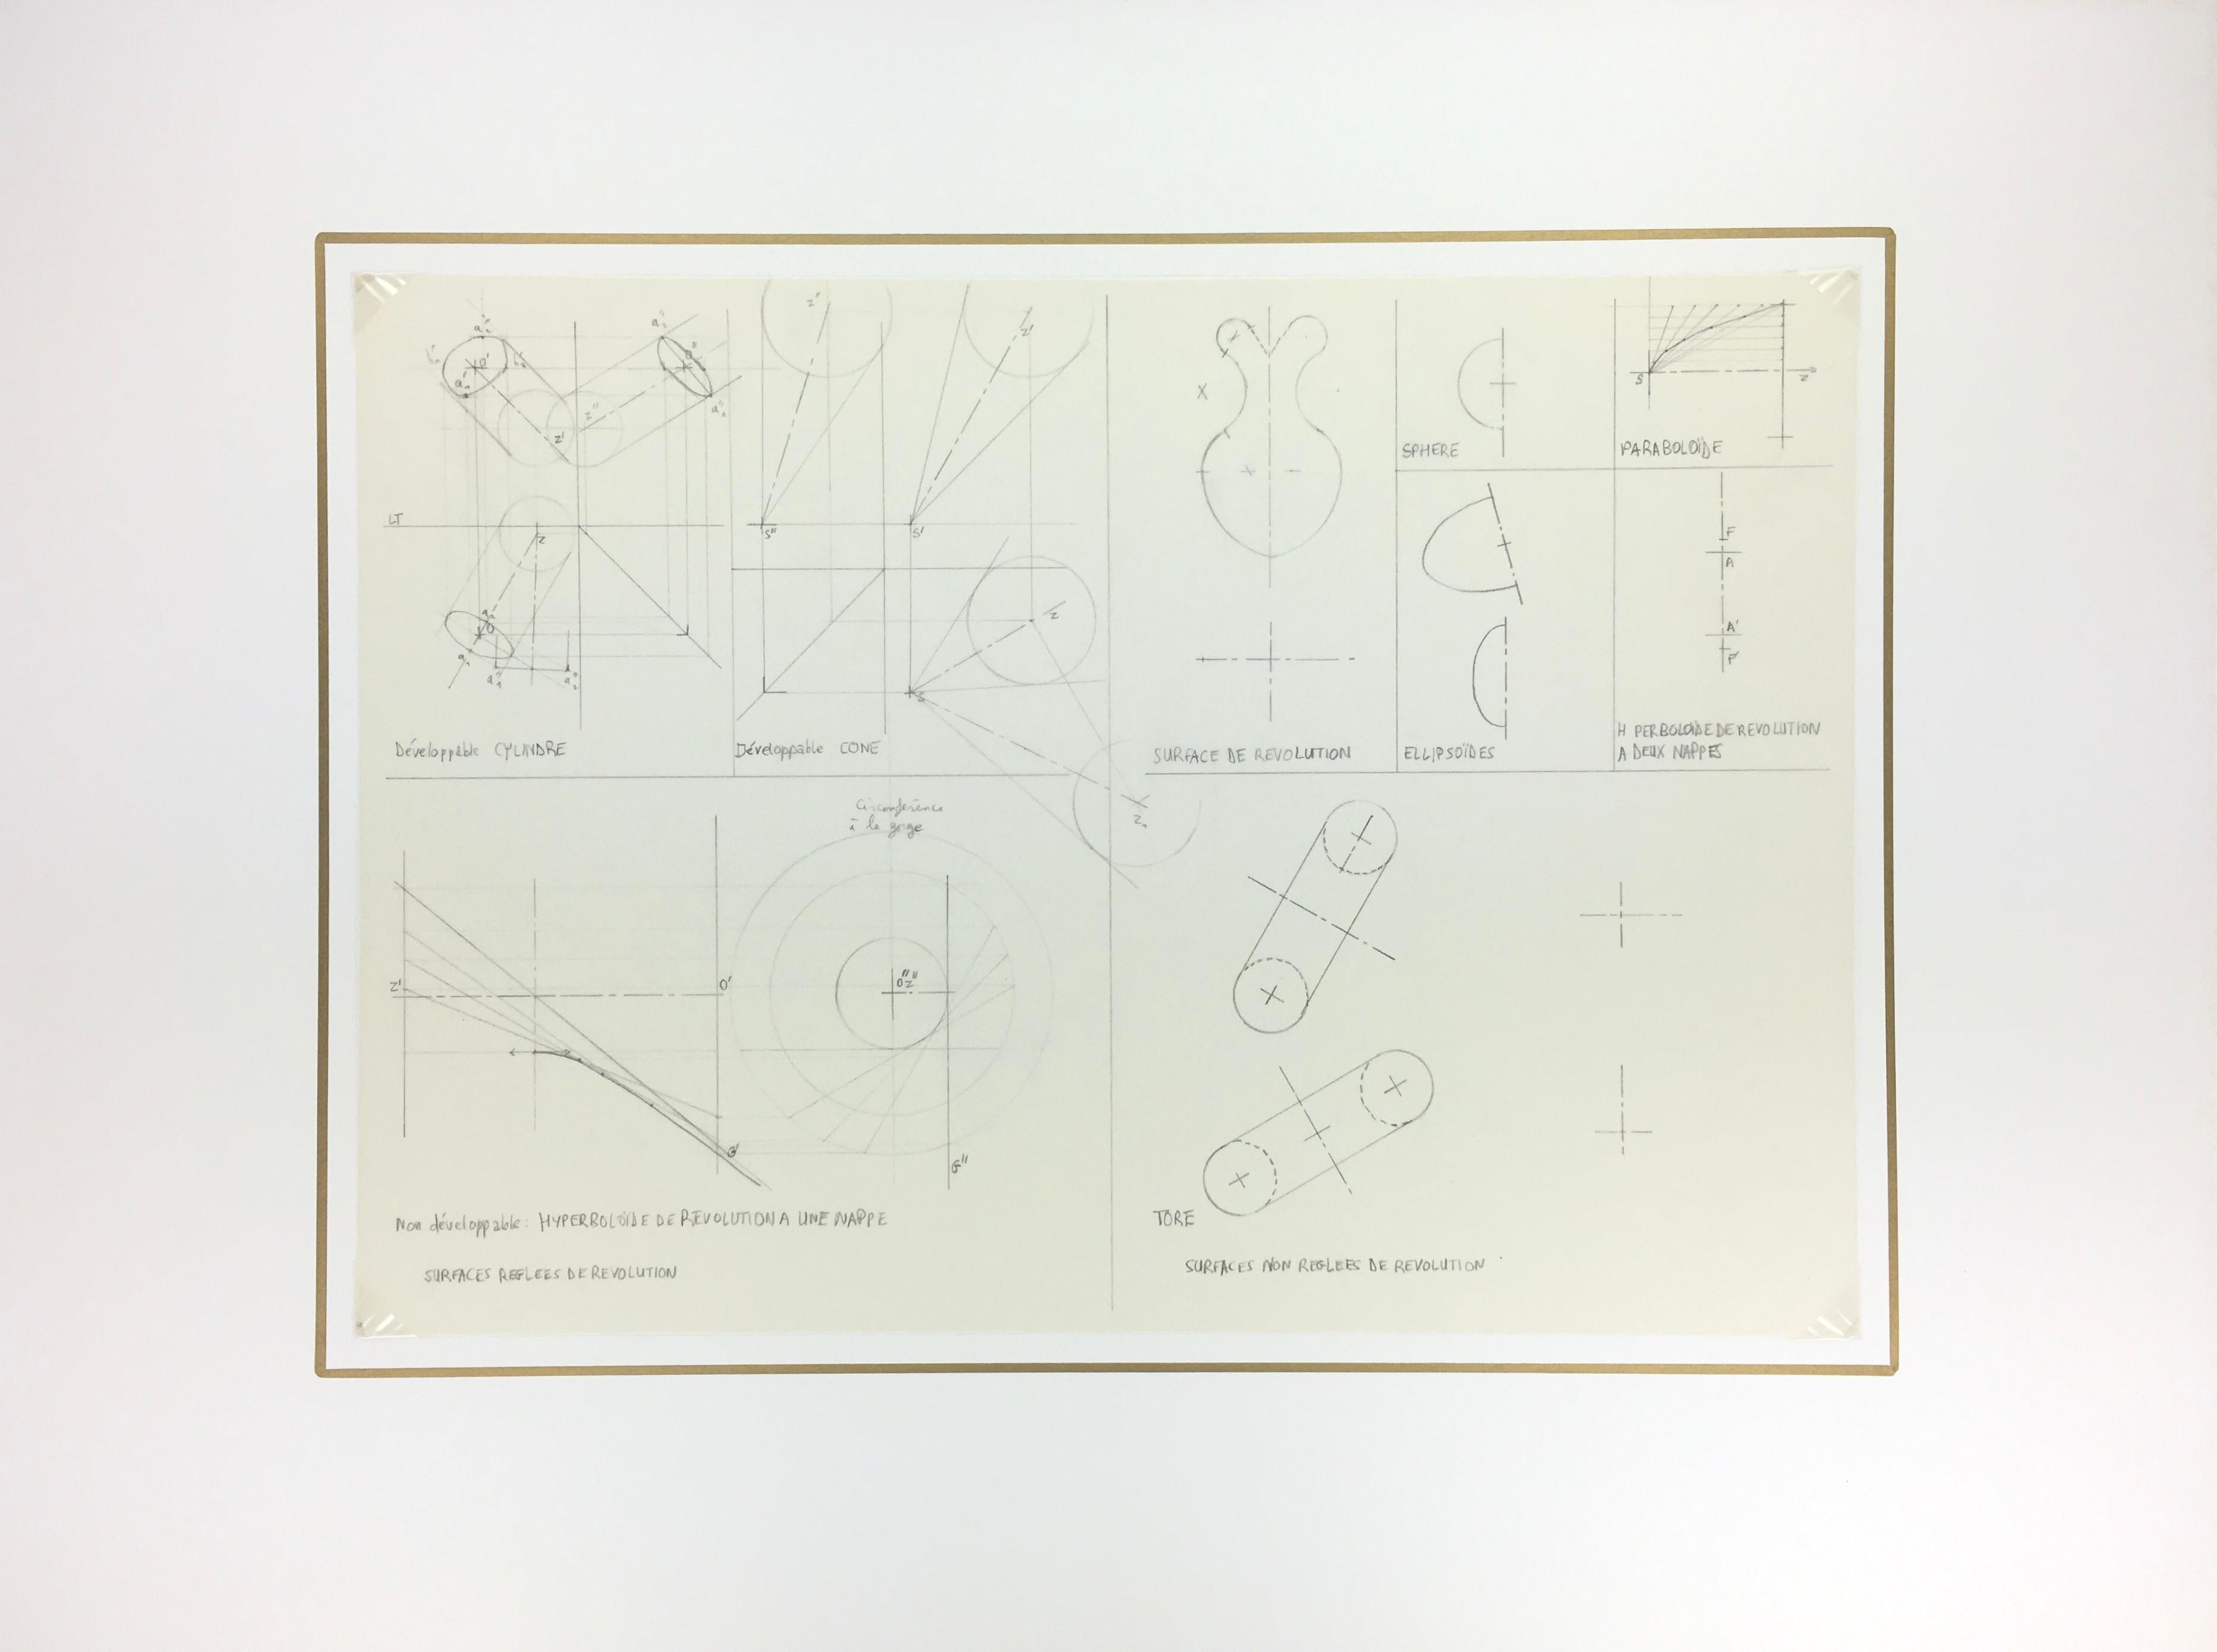 Französische technische Zeichnung von geometrischen Formen, um 1980.  Akademische Zeichnung von geometrischen Formen und Perspektiven auf Büttenpapier.

Originalkunstwerk auf Papier auf einem weißen Passepartout mit Goldrand. Die Matte passt in